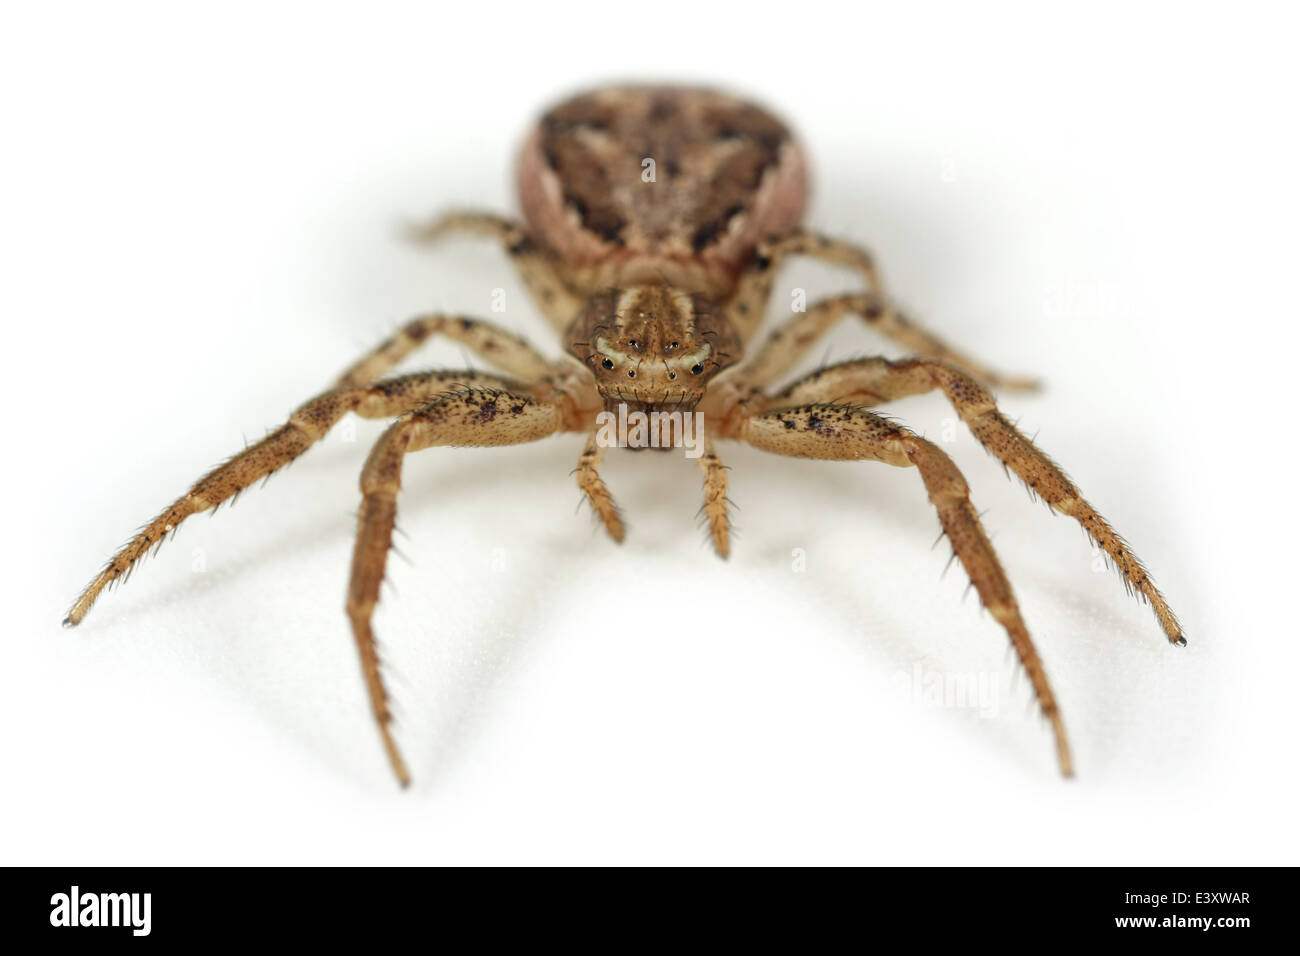 Weibliche Xysticus Cristatus Spinne, Teil der Familie Thomisidae - Krabben Spinnen. Isoliert auf weißem Hintergrund. Stockfoto